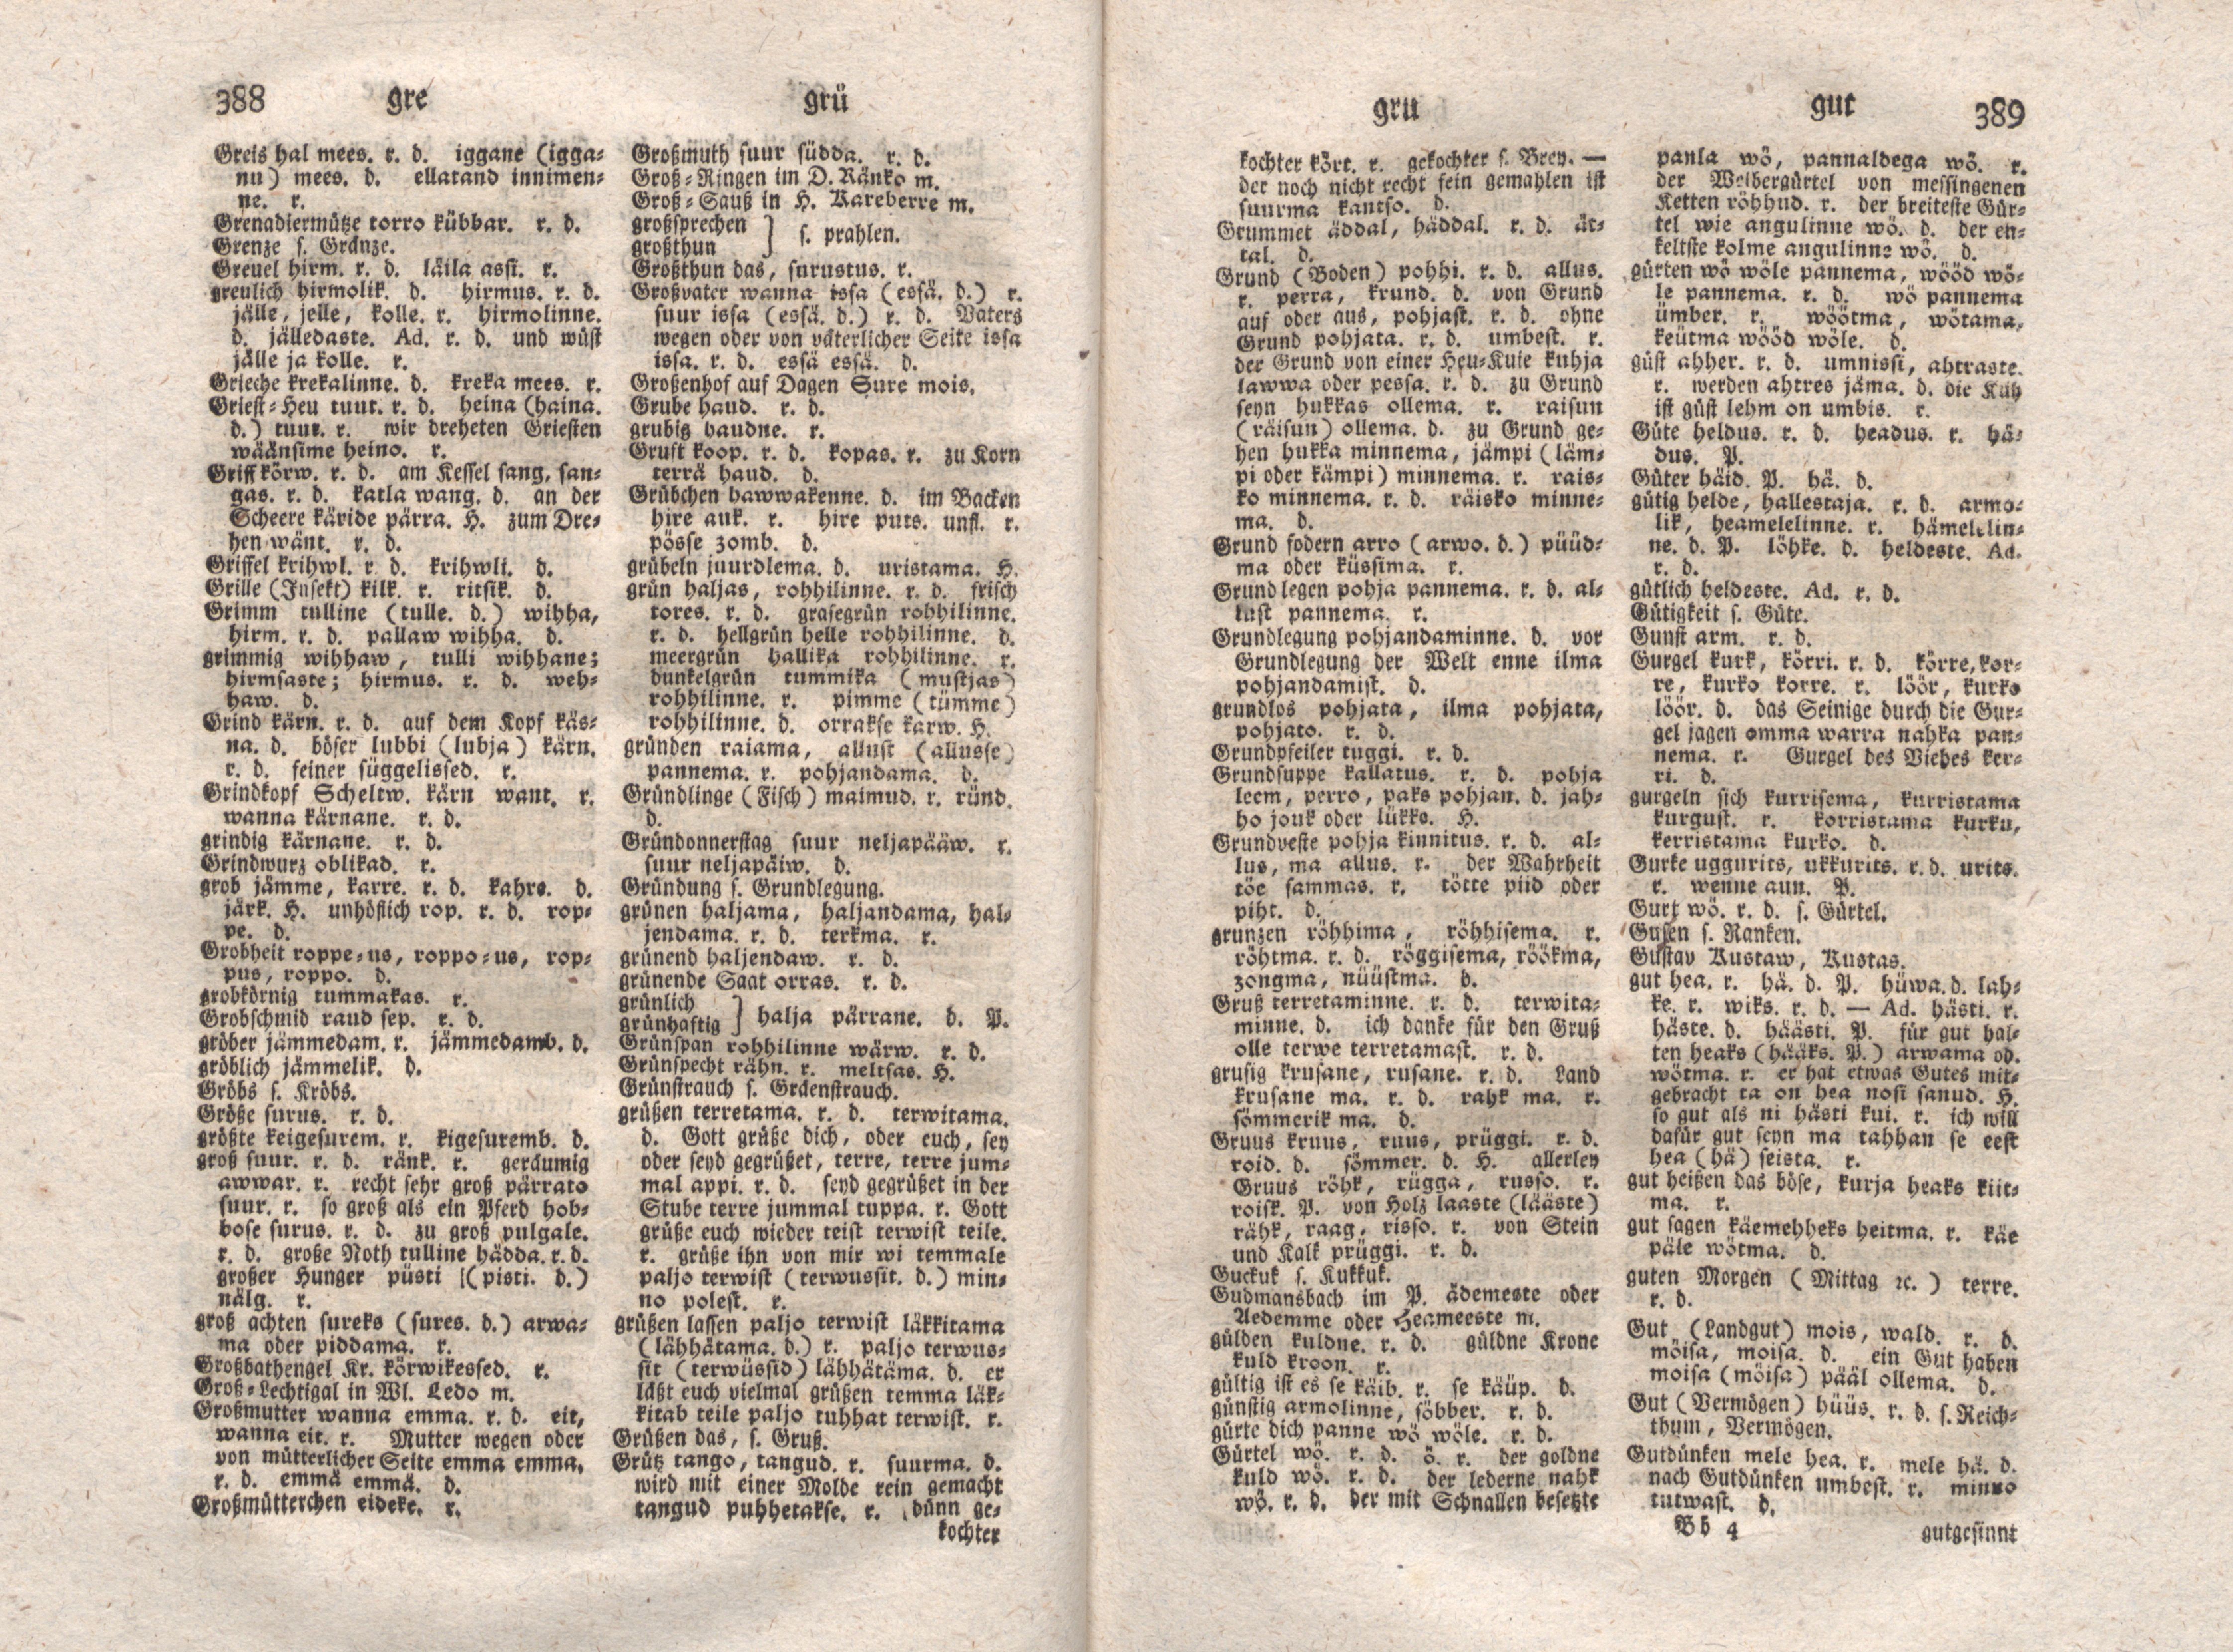 Ehstnische Sprachlehre für beide Hauptdialekte (1780) | 205. (388-389) Основной текст